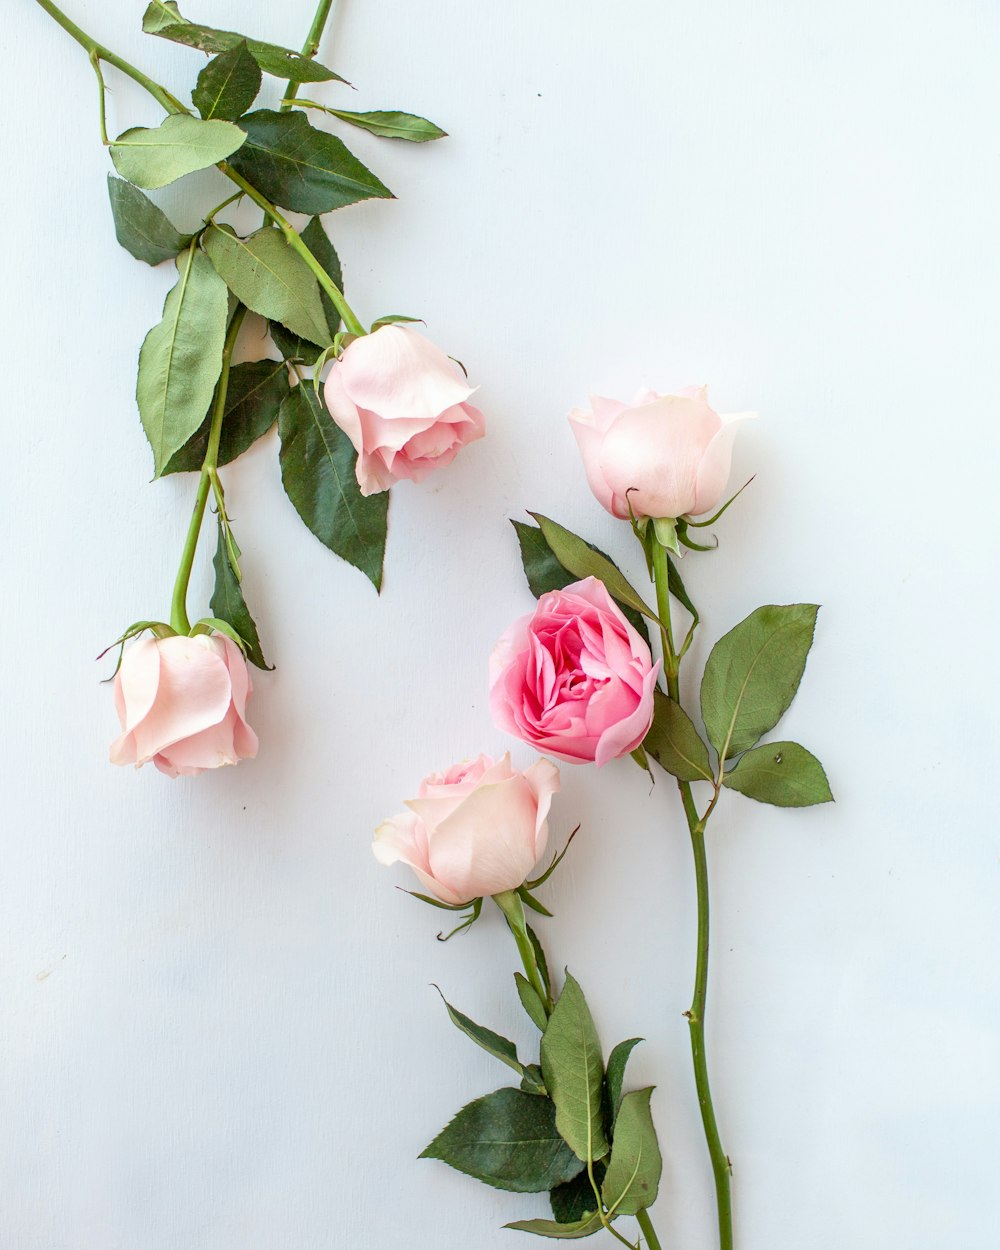 Hình ảnh hoa hồng màu hồng là sự kết hợp hoàn hảo của vẻ đẹp cổ điển và màu sắc tươi mới. Bức ảnh này sẽ khiến bạn muốn nhìn mãi không mệt mỏi, để ngắm những cánh hoa được chụp với tư thế tinh tế và độ sáng tối phù hợp.